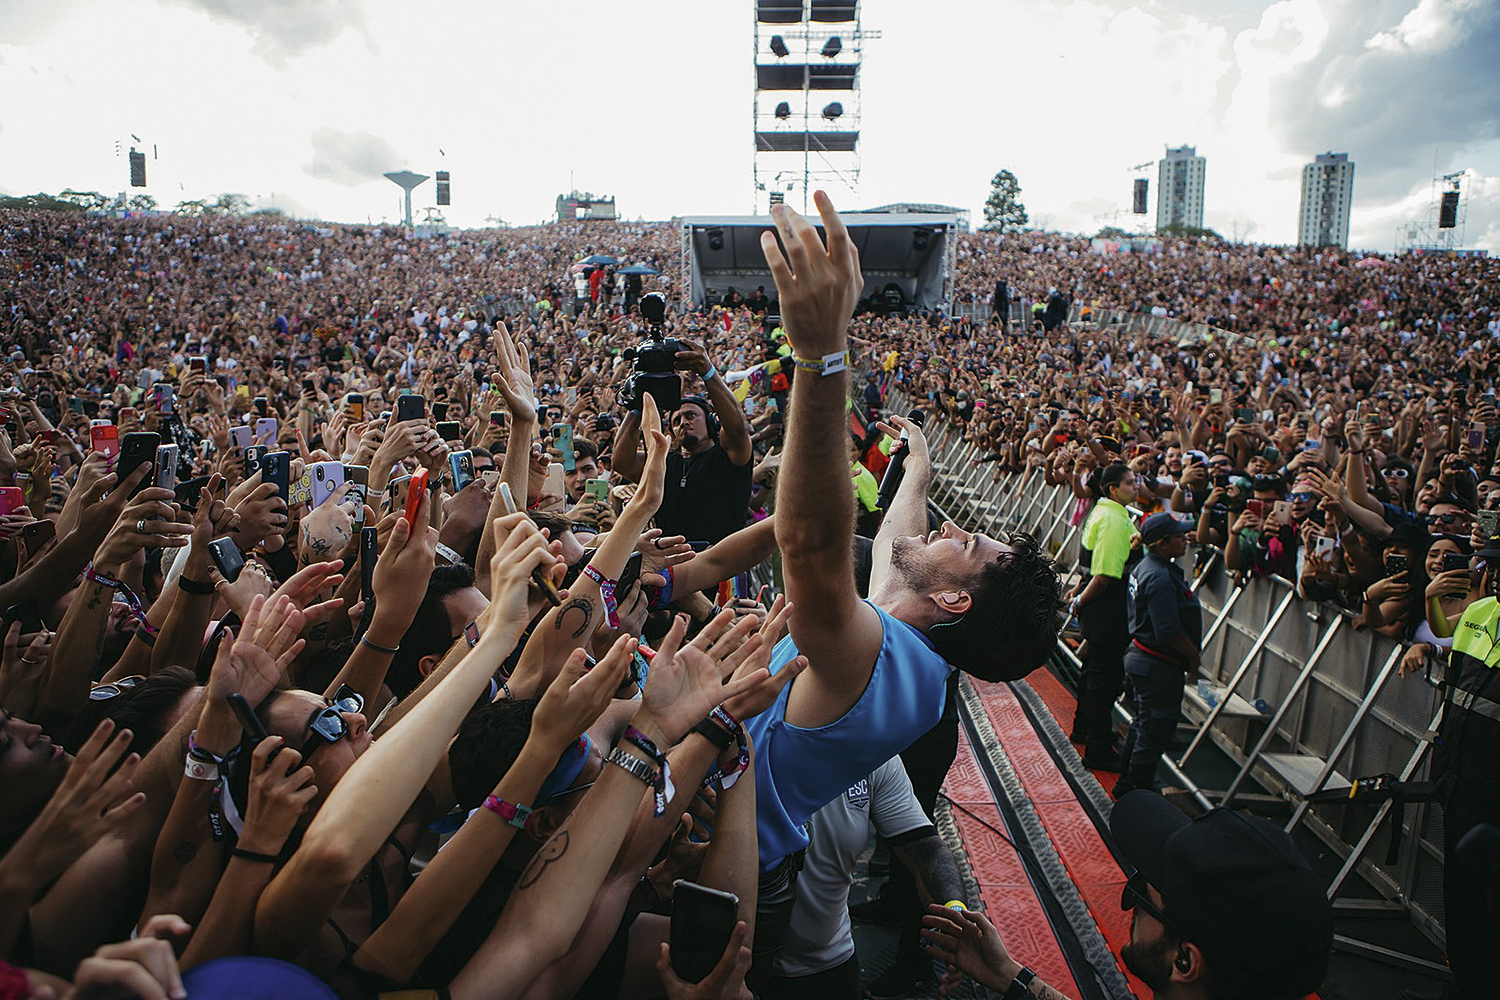 APOTEOSE - Jão nos braços do público: sucesso no Lollapalooza -